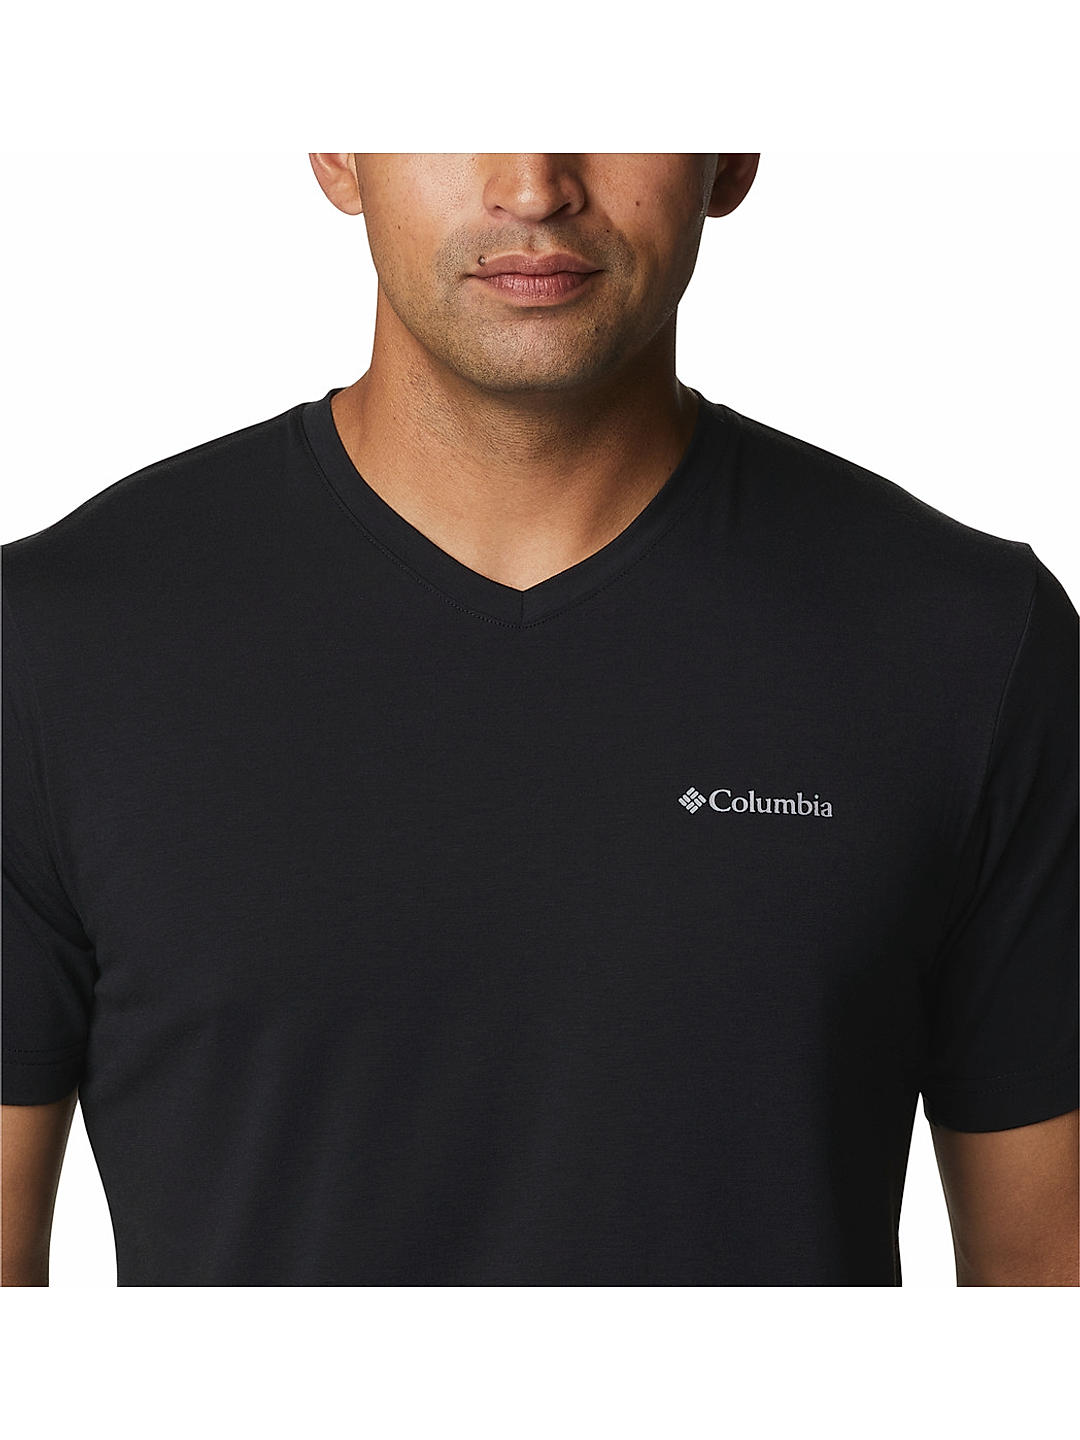 Buy Black Sun V-Neck Short Sleeve for Men Online at Columbia Sportswear | 480750